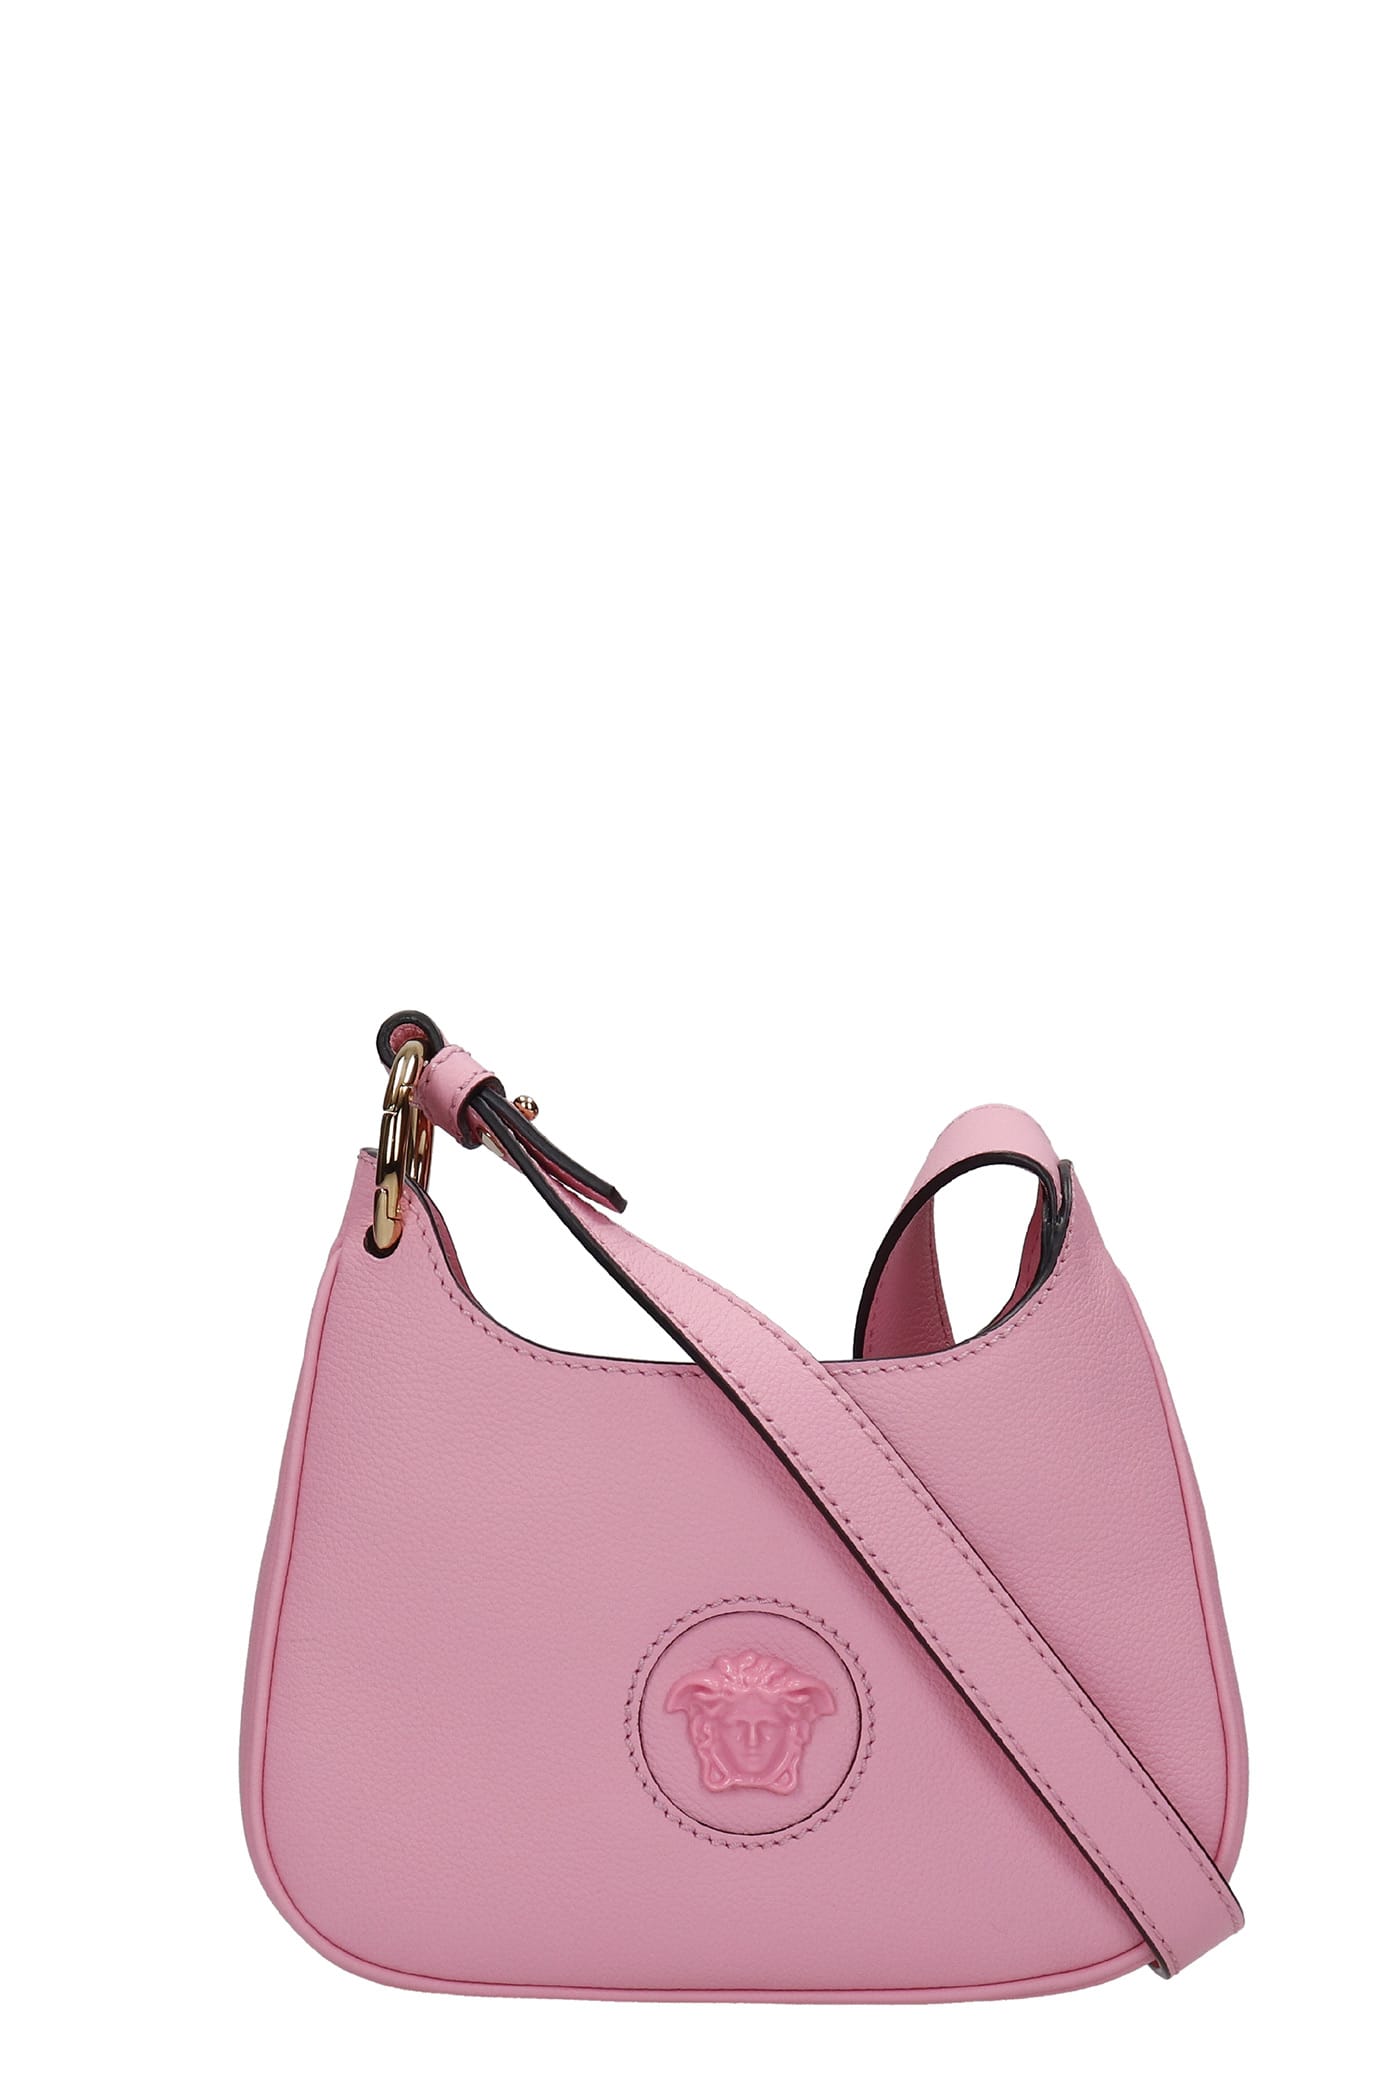 Versace Shoulder Bag In Rose-pink Leather